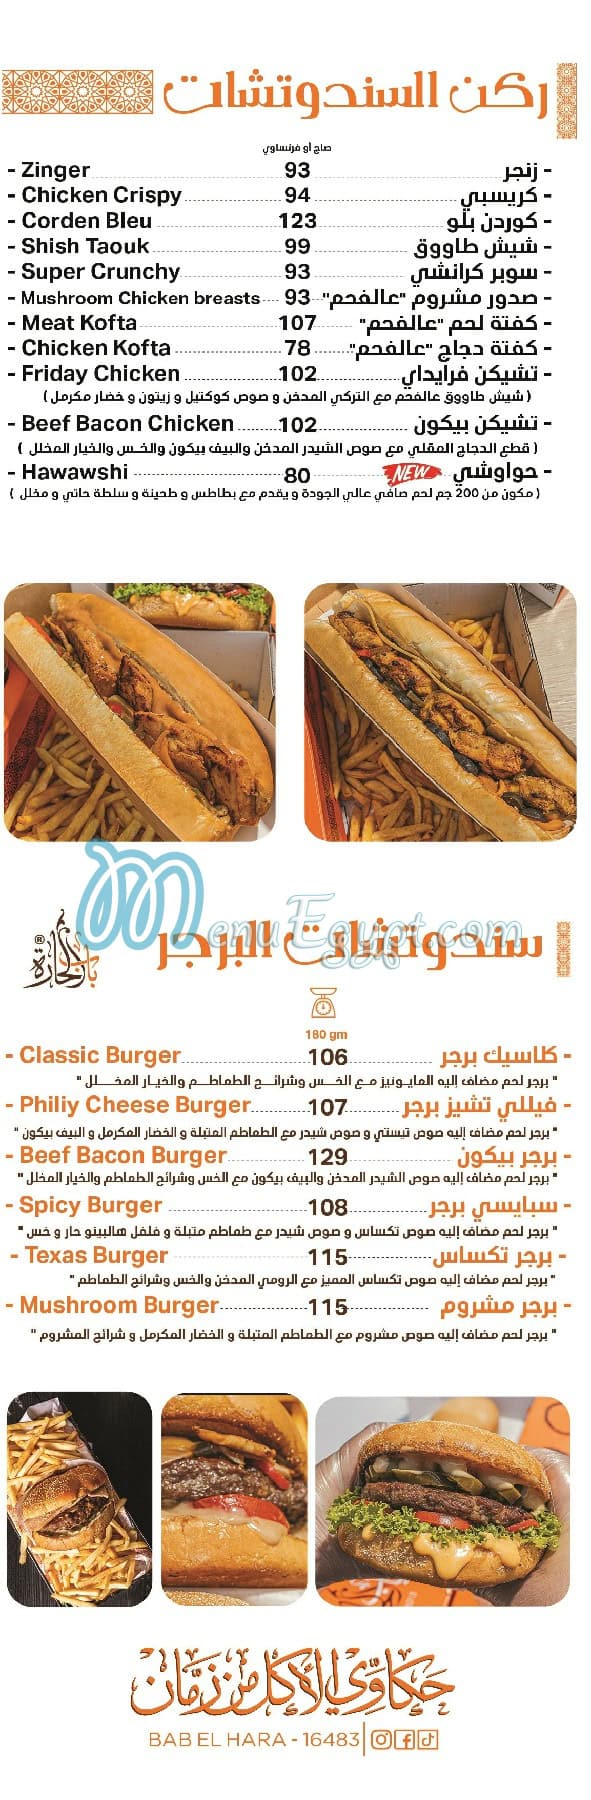 Bab Elhara menu prices